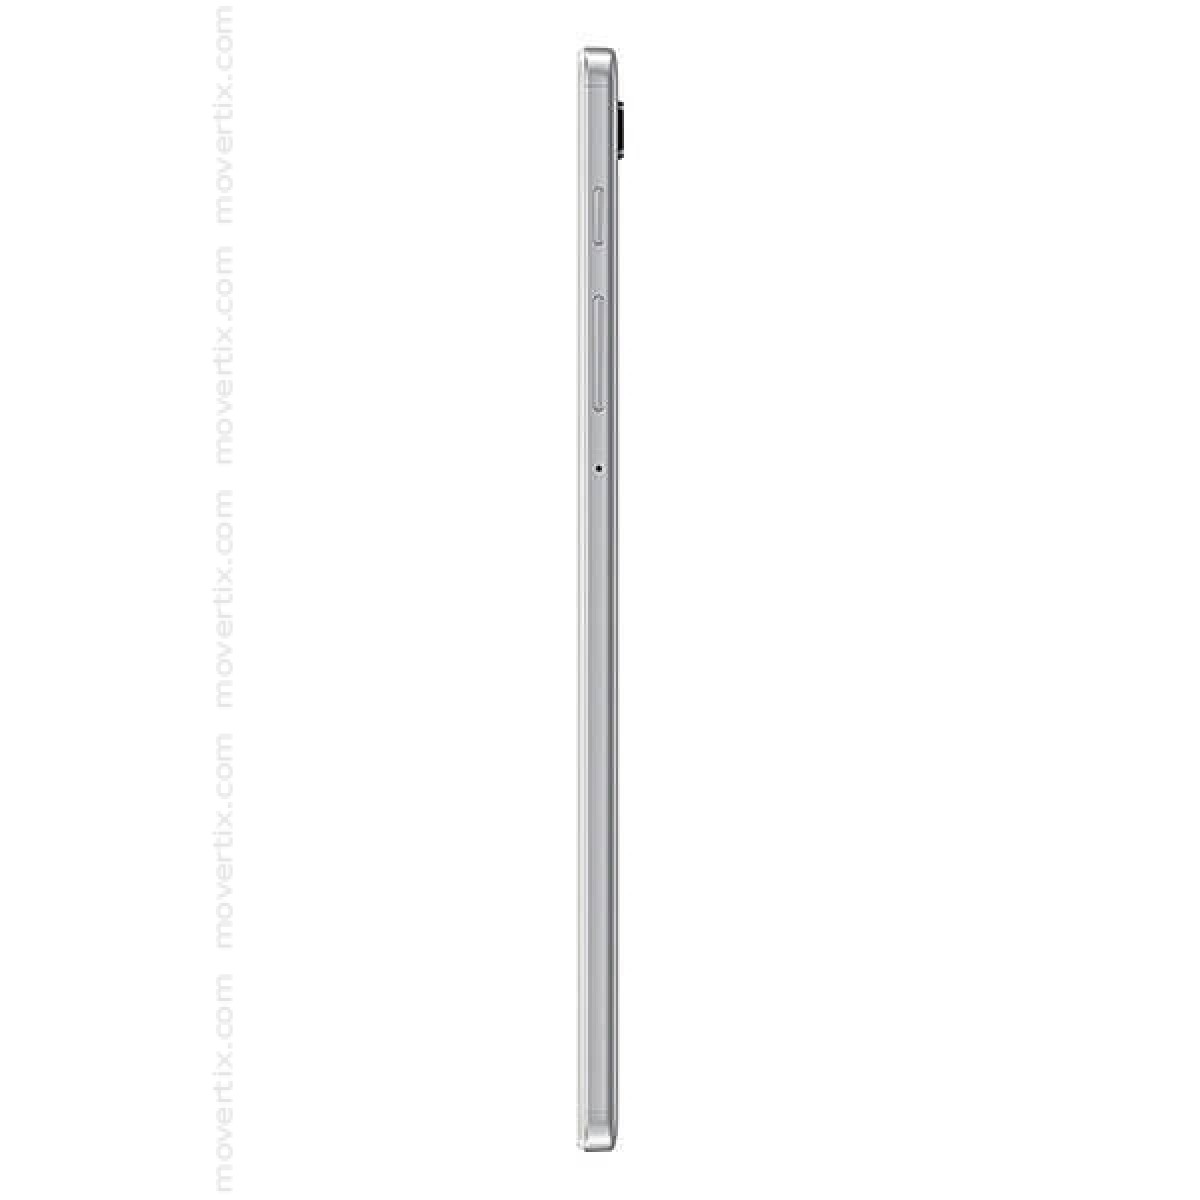 Samsung Galaxy Tab A7 Lite (8.7", LTE) Silver 32GB and 3GB RAM